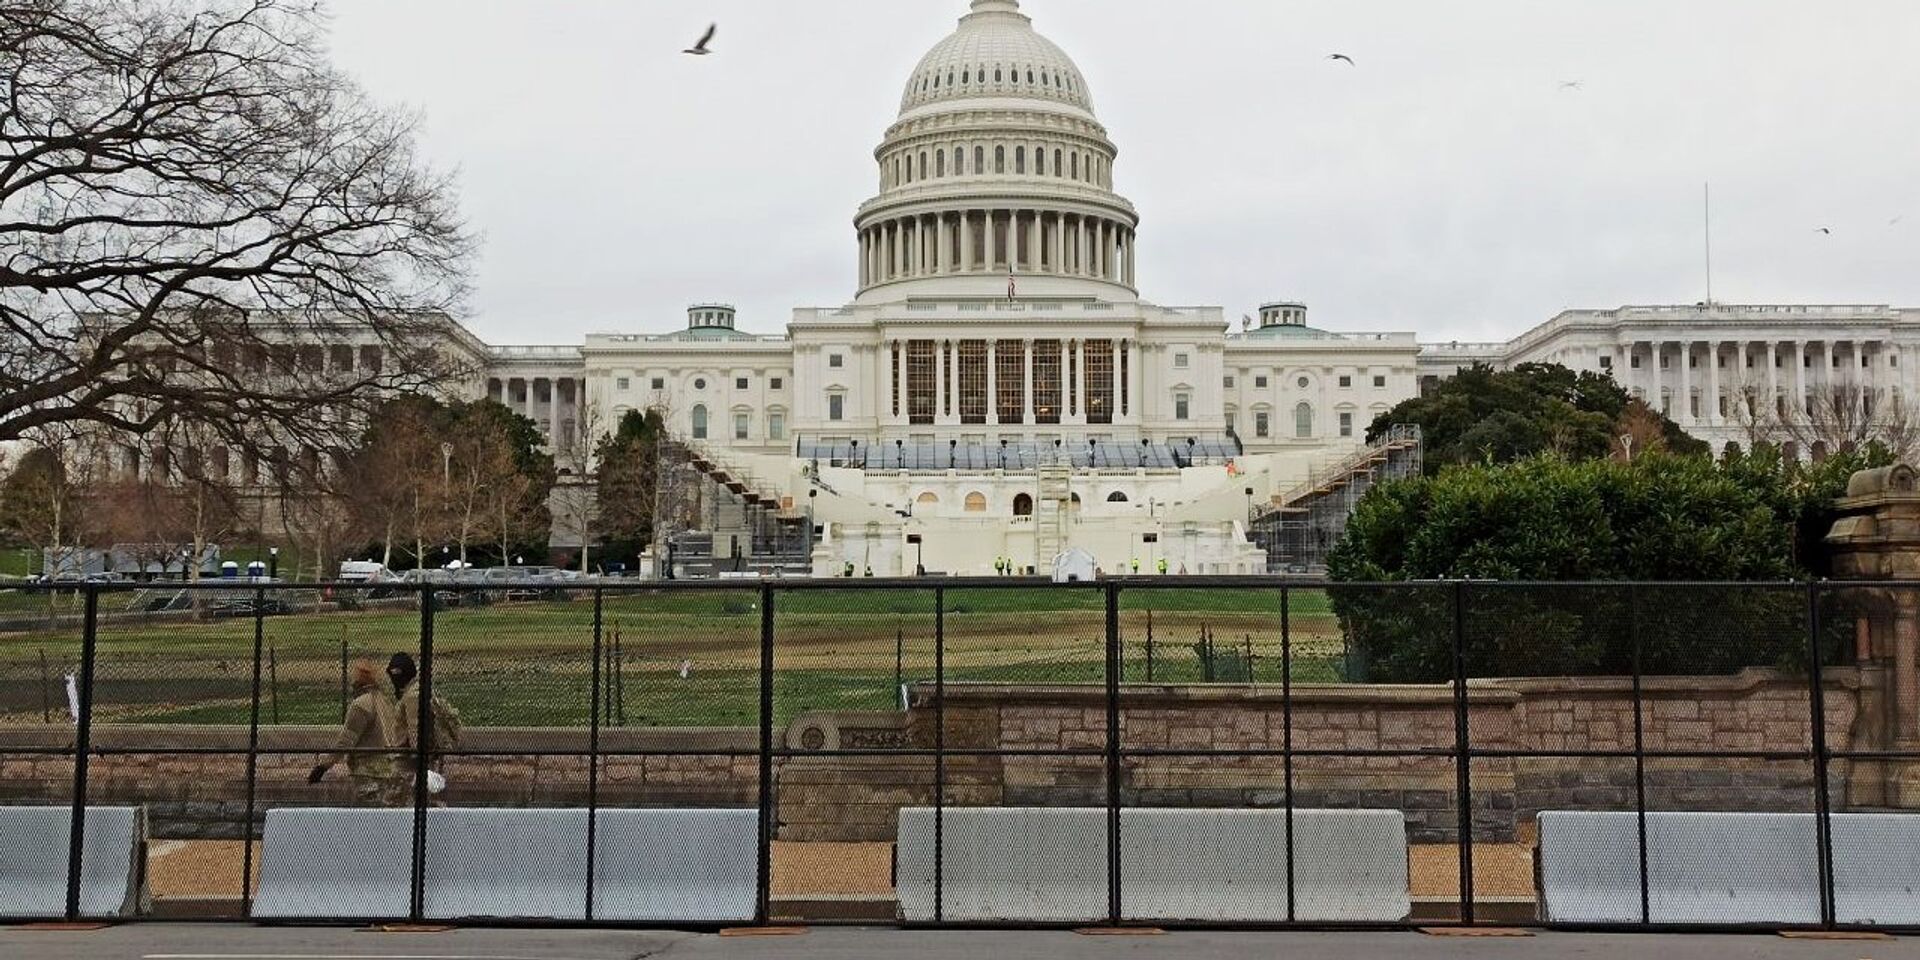 Заграждения установлены у Капитолия (здания Конгресса США) после штурма здания сторонниками Дональда Трампа - ИноСМИ, 1920, 30.04.2021